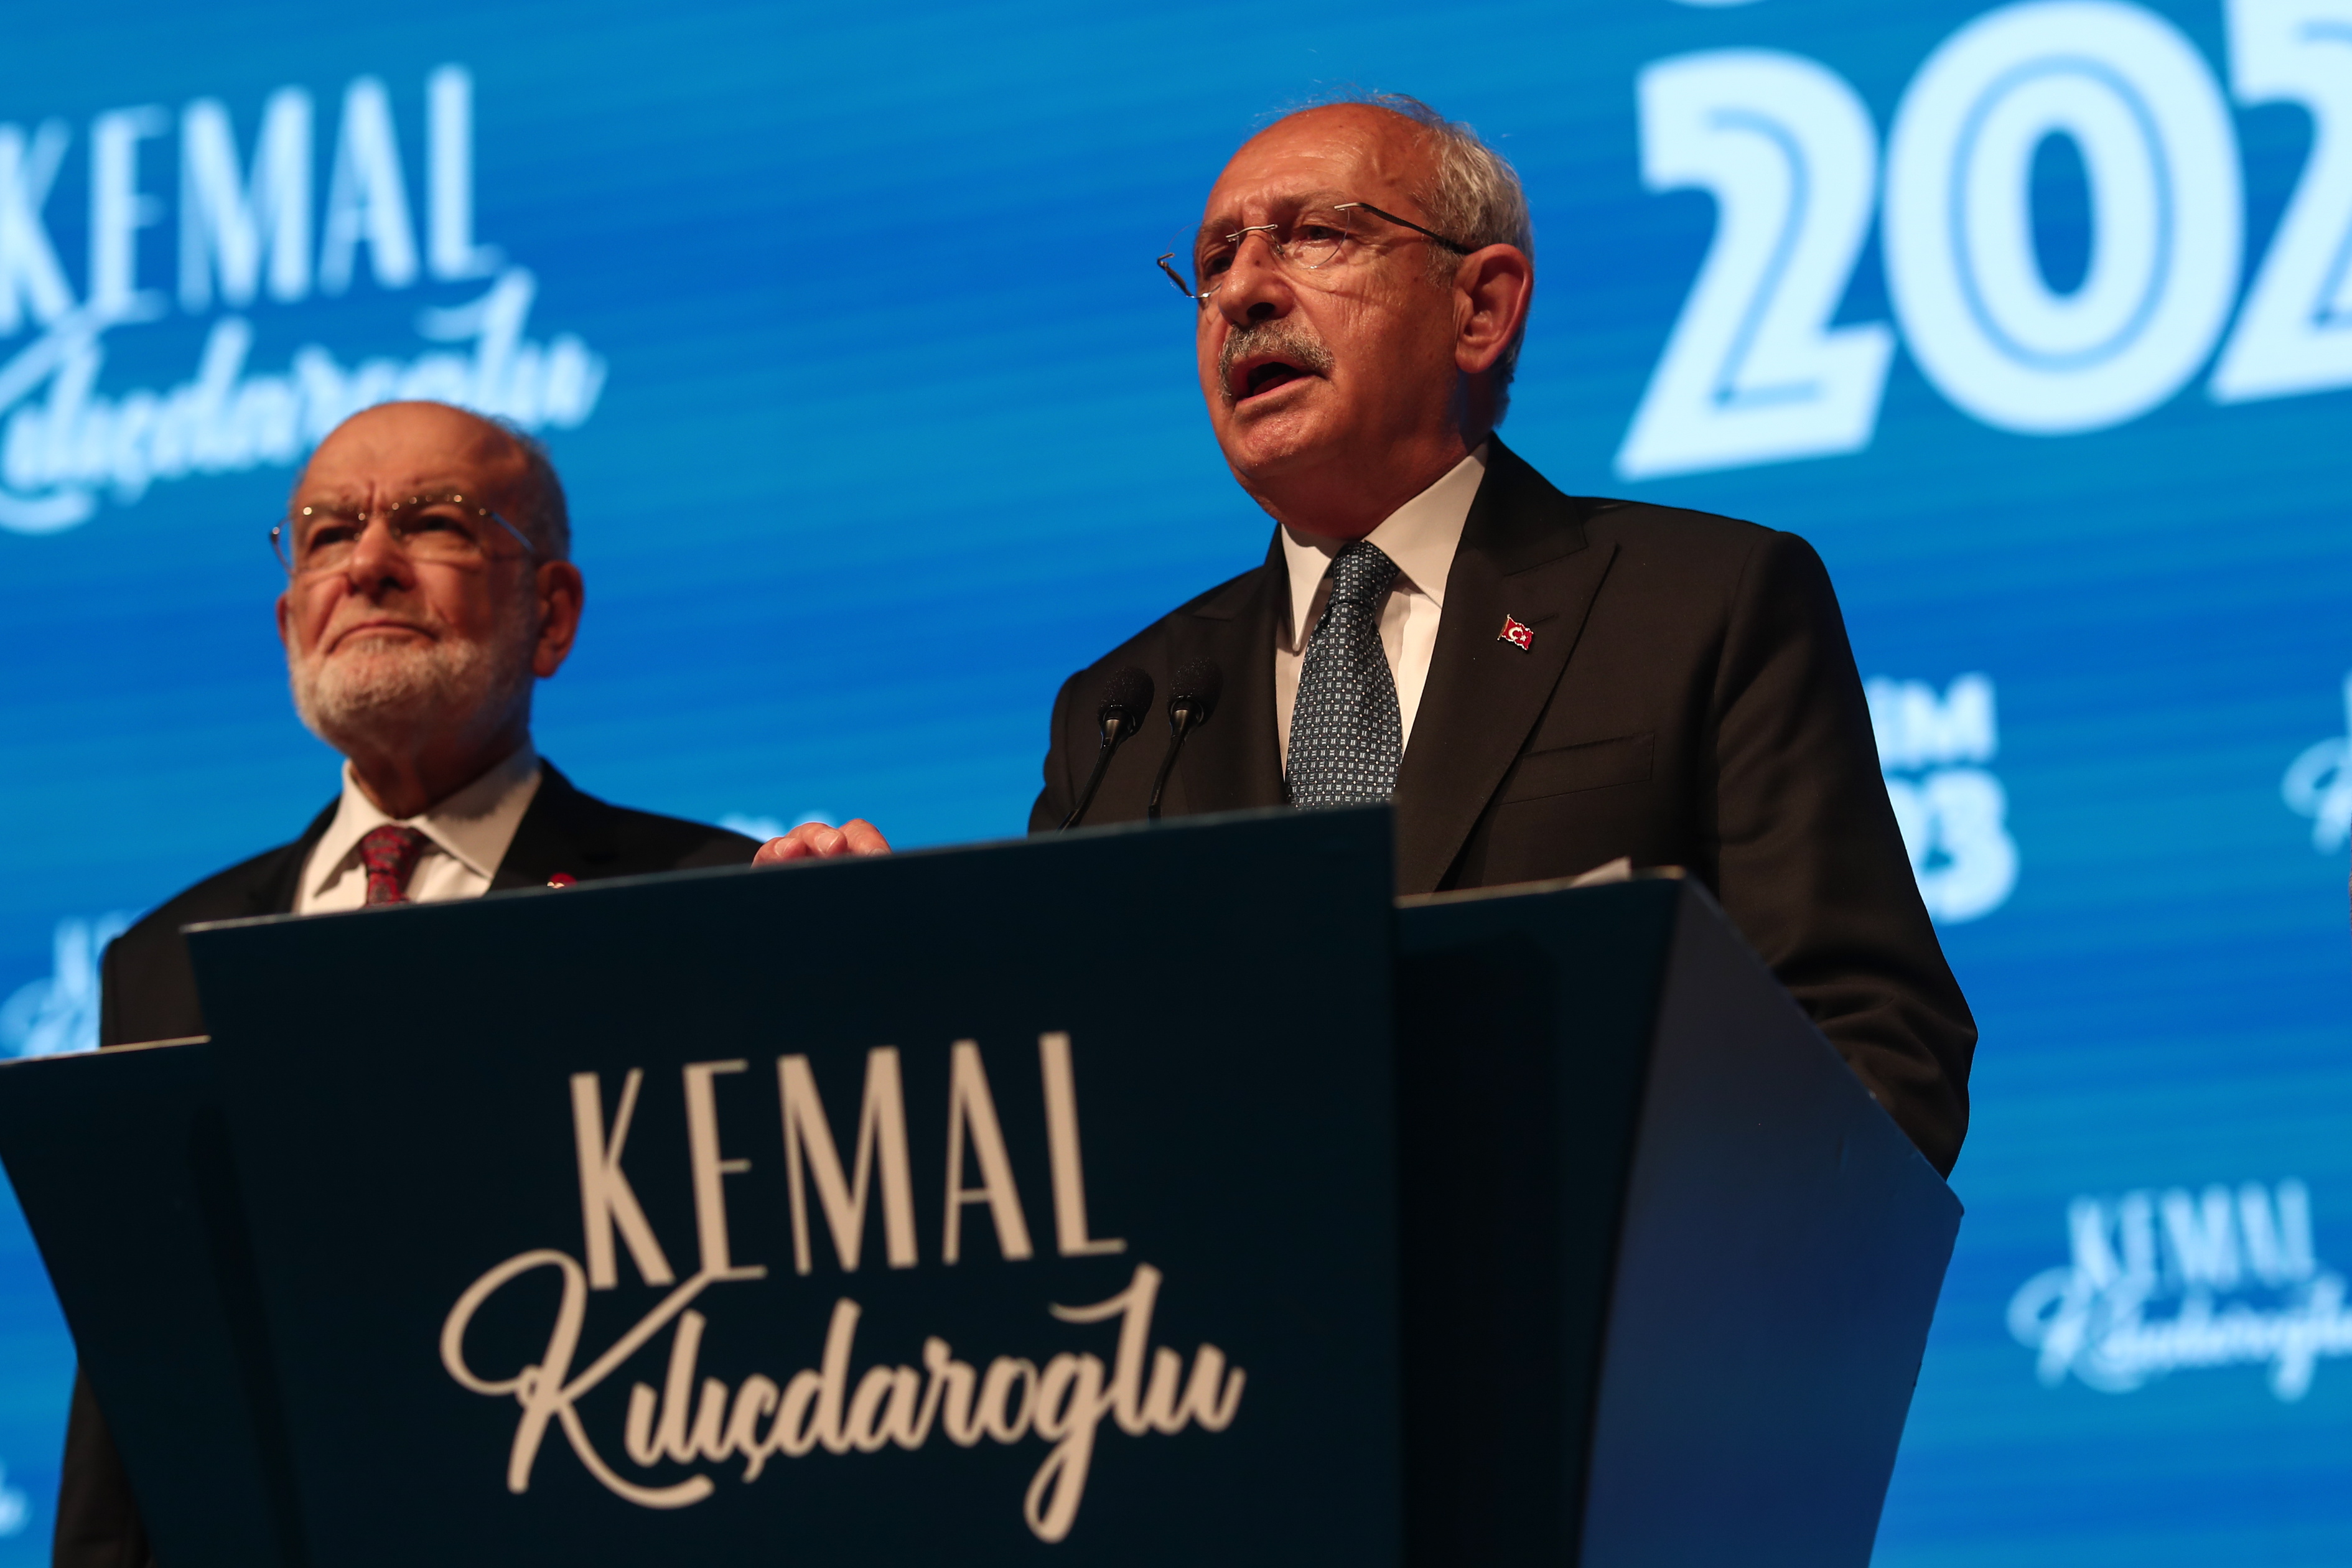 Kemal Kiliçdaroglu prometió ganar en la segunda vuelta de las presidenciales